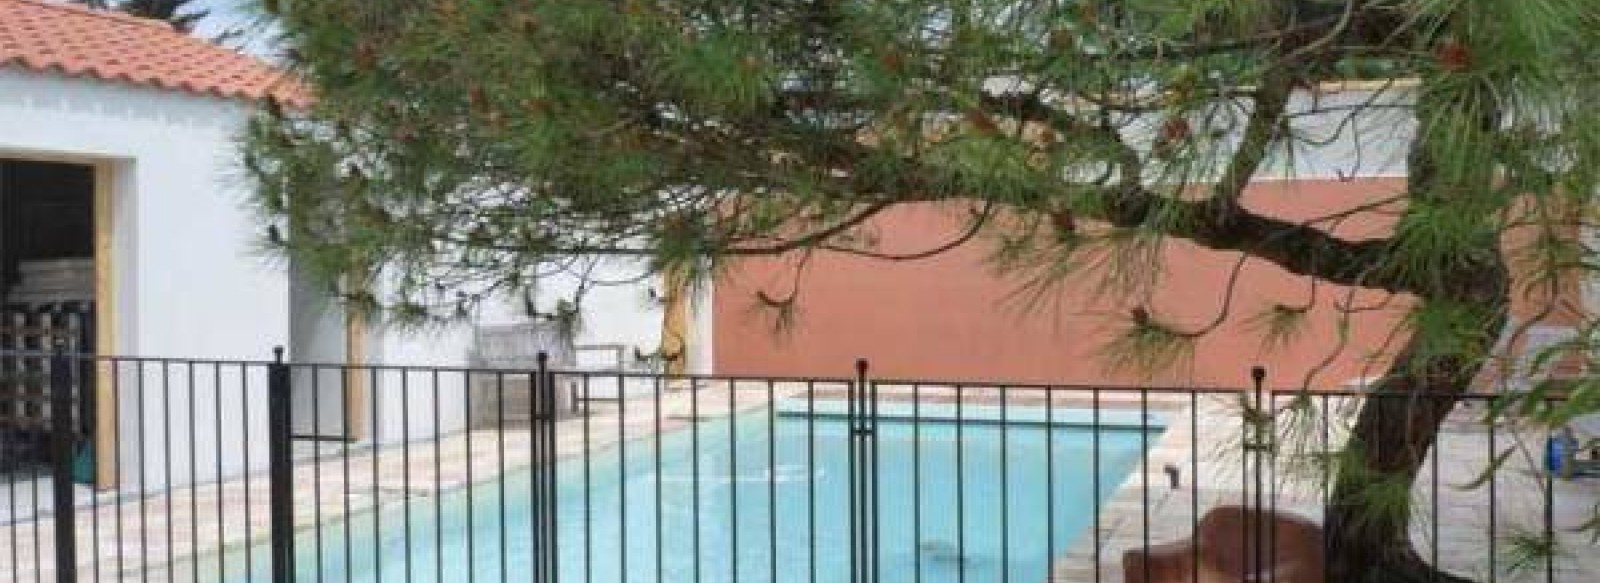 villa avec piscine privee  chauffee securisee - 5  chambres dont 3 espaces pour les petits-